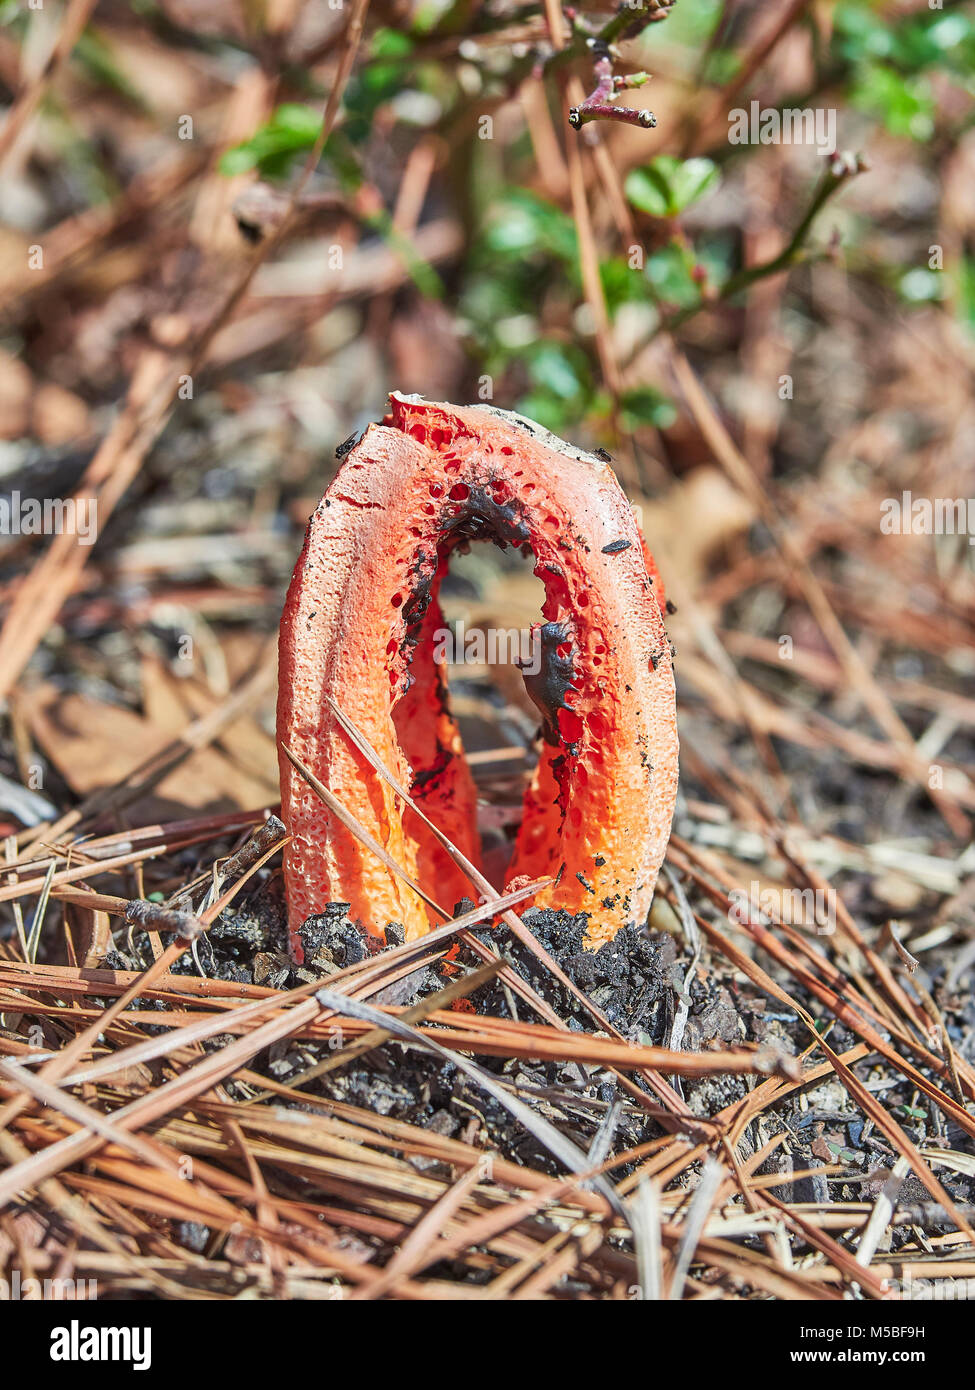 Clathrus Ruber, Cage Exemplar des Gemeinen Stinkmorchels, oder Korb Exemplar des Gemeinen Stinkmorchels wachsen auf Waldboden, Montgomery, Alabama, USA. Stockfoto